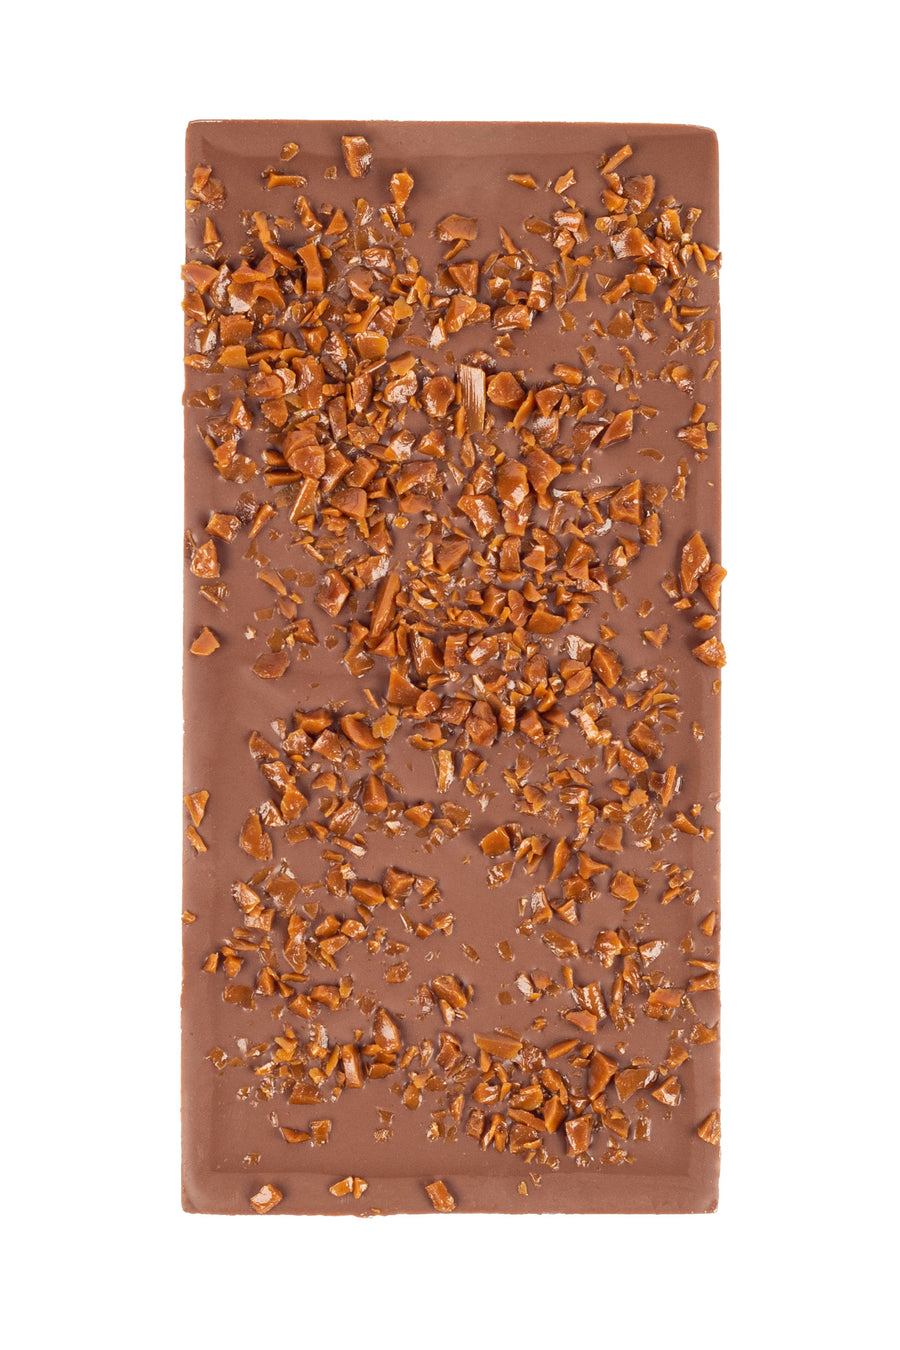 Tablette caramel beurre salé - chocolat noël - chocolat de concept chocolate - concept chocolate - chocolaterie artisanale - chocolat en boutique - chocolaterie Bruxelles - chocolaterie Schaerbeek - chocolat de bonne qualité